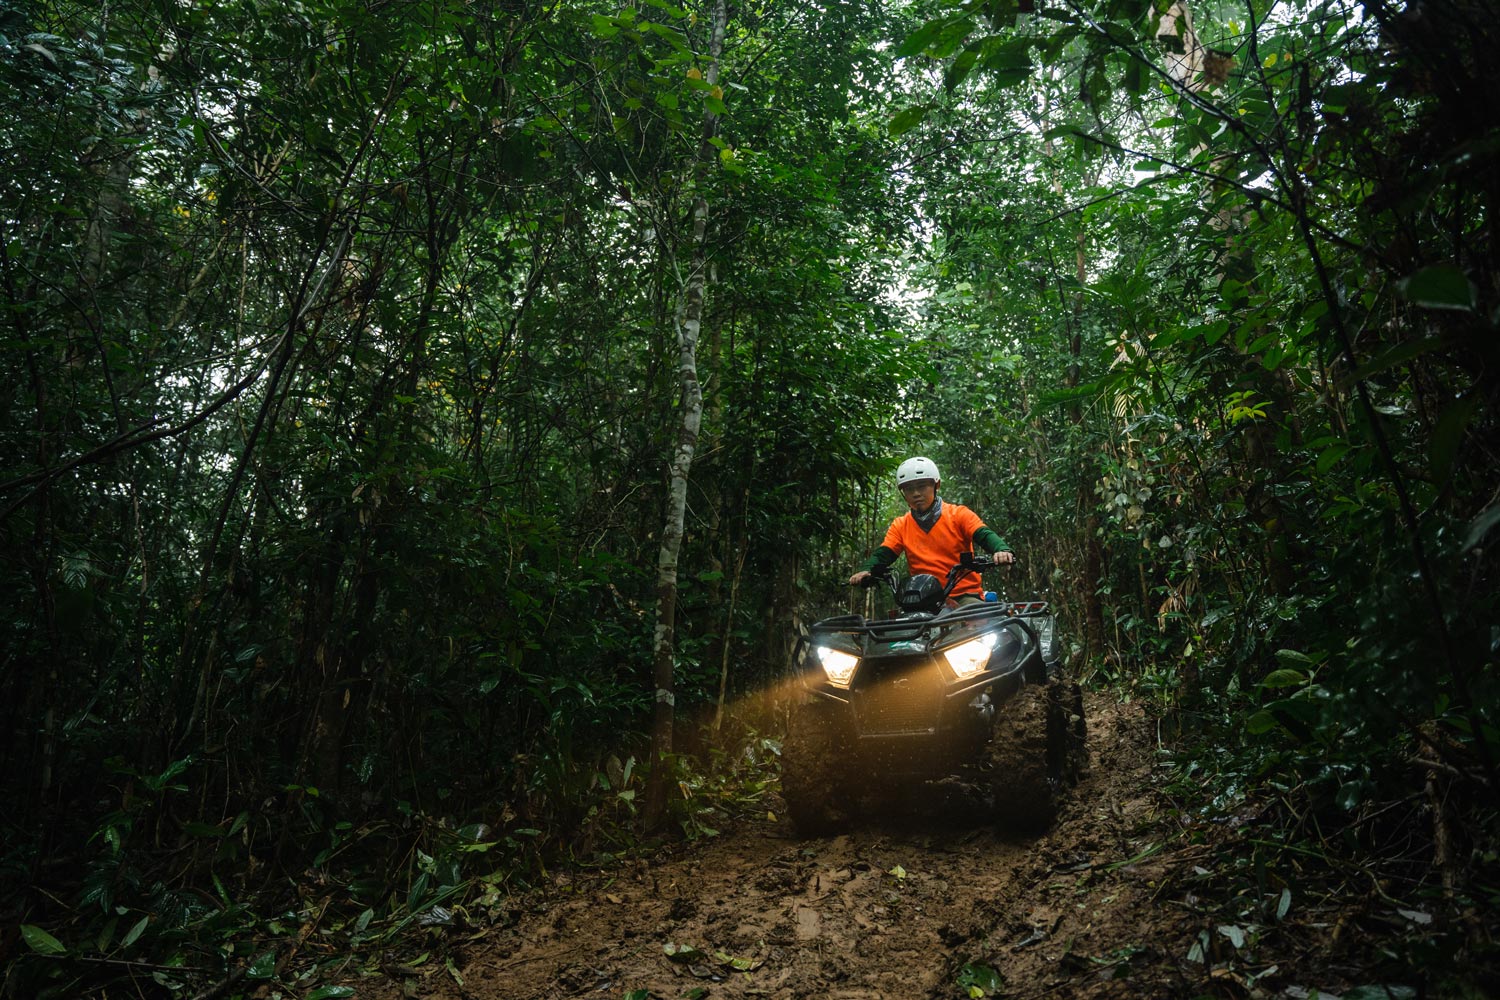 Tham gia tour, du khách được tự mình làm chủ cung đường, lái xe ATV chạy xuyên qua cánh rừng lim.